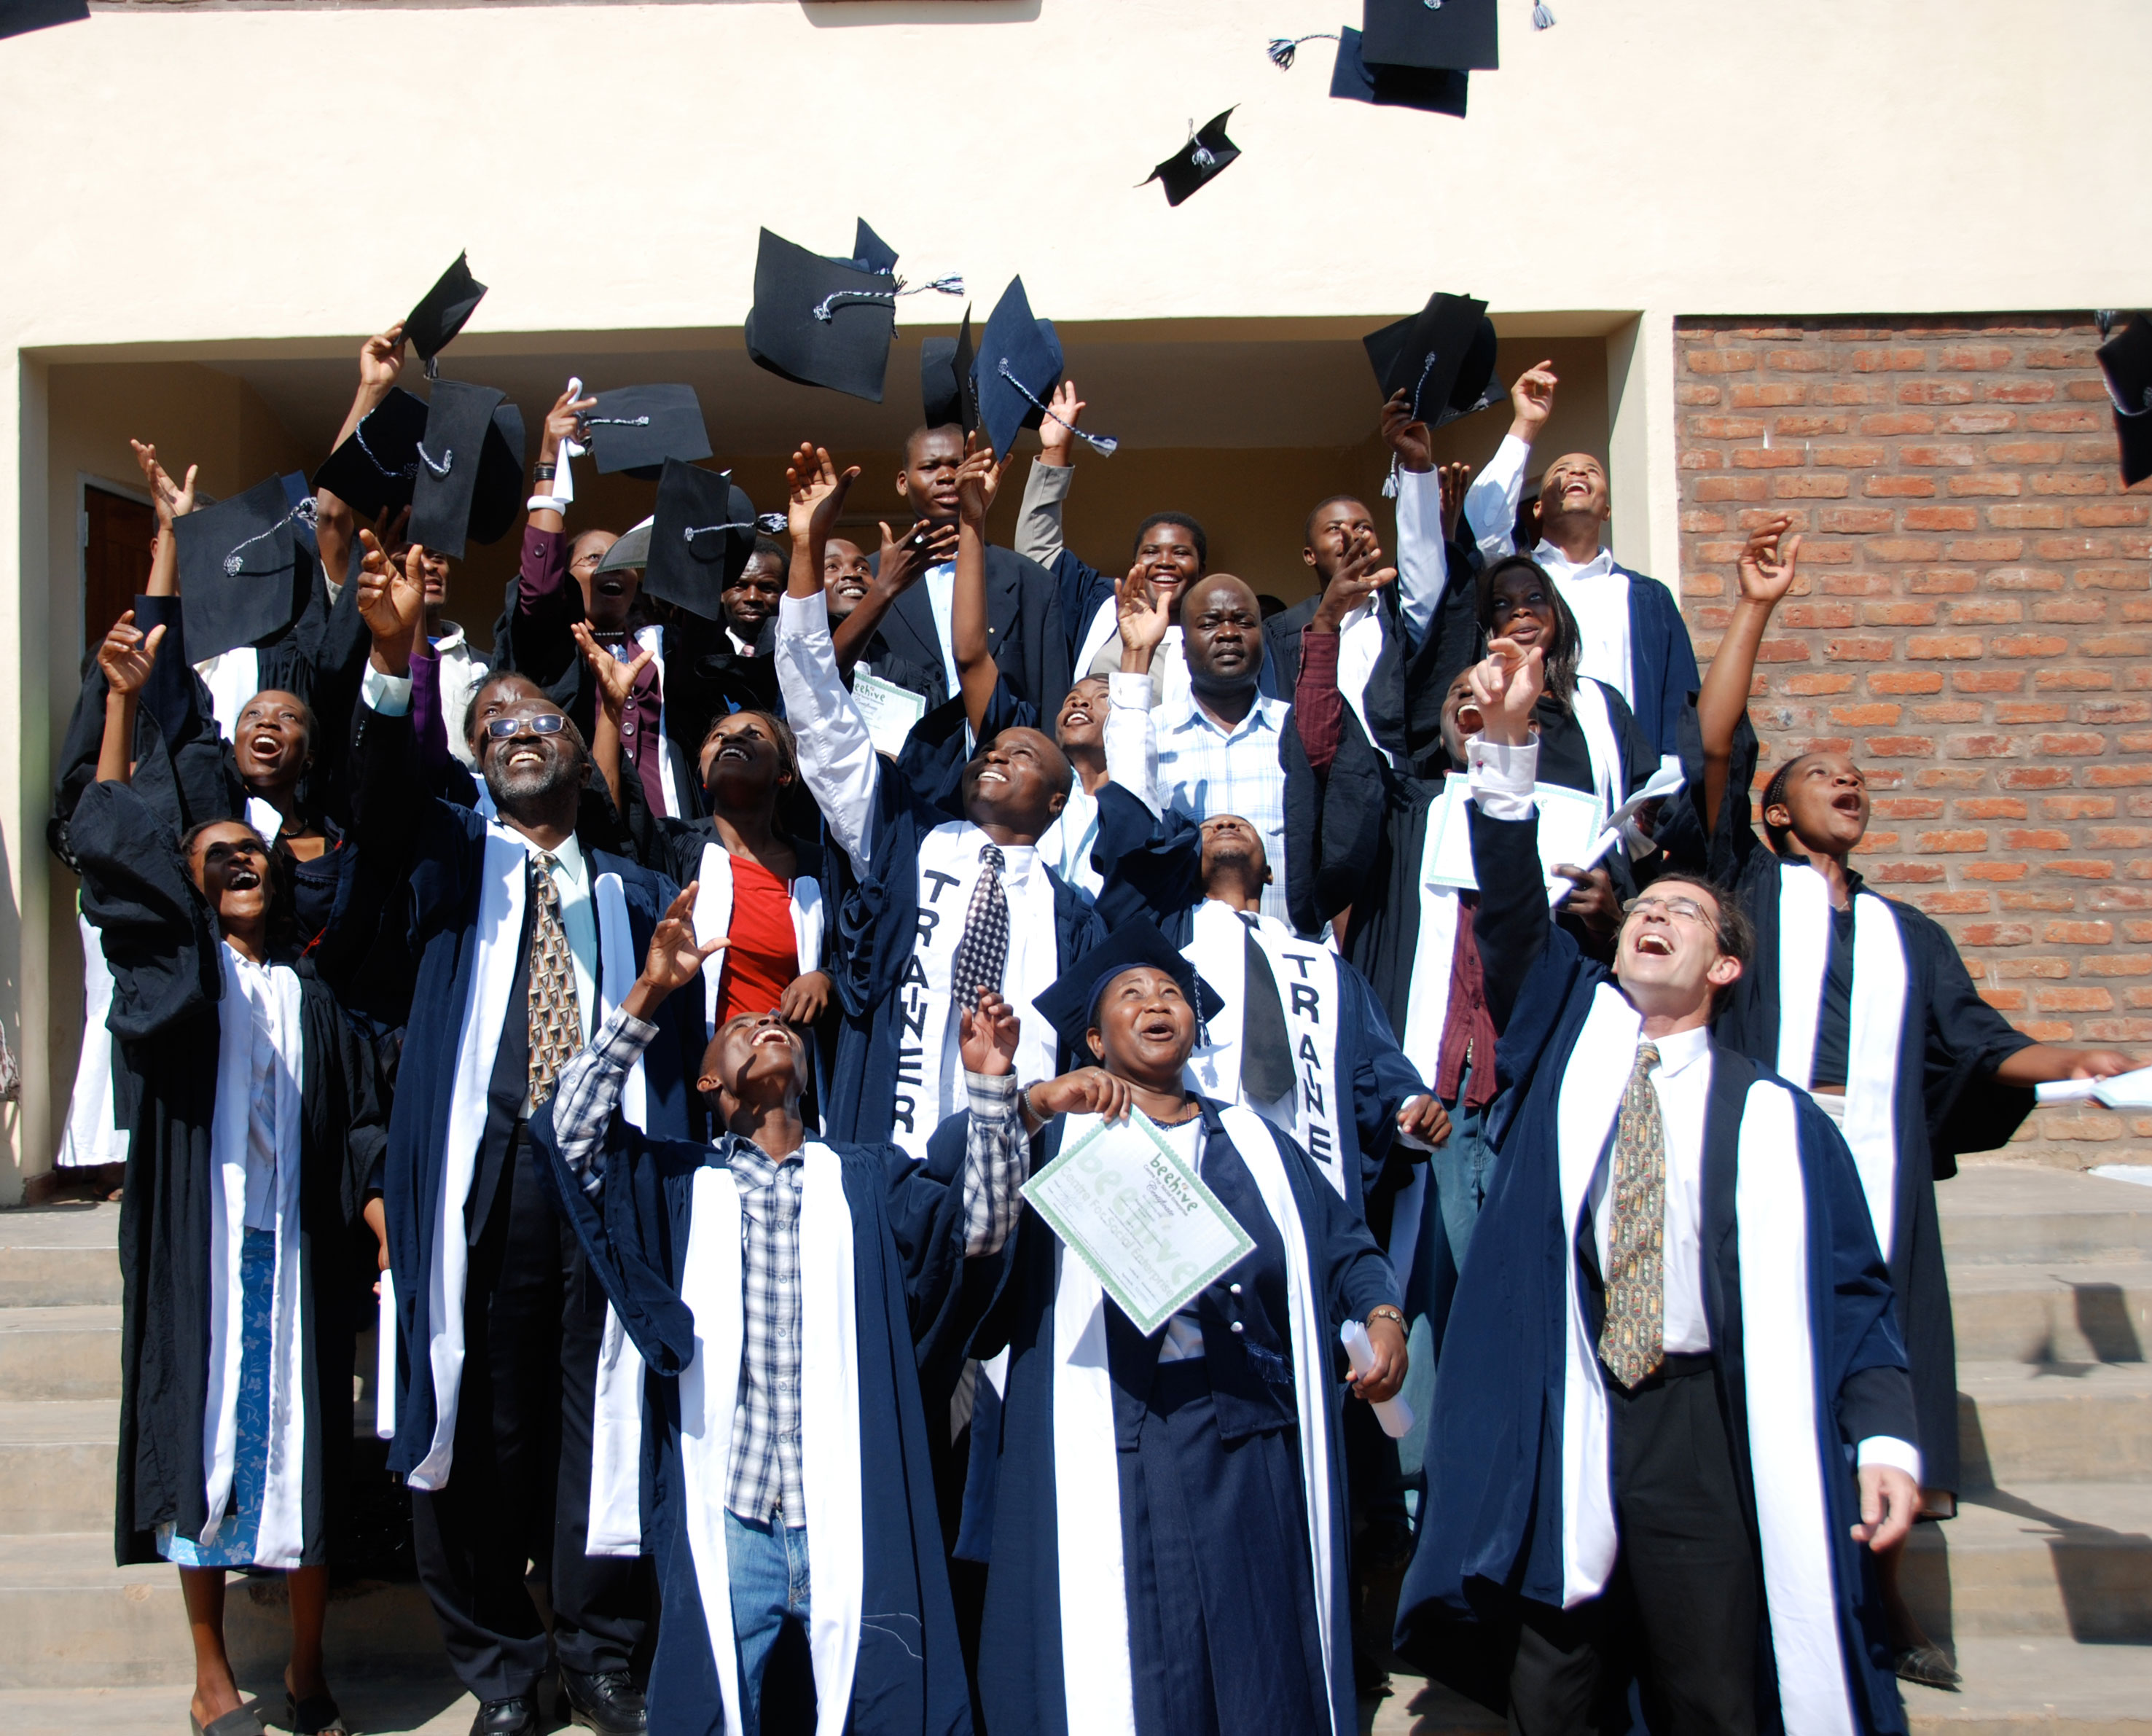 Hats off! Happy graduates